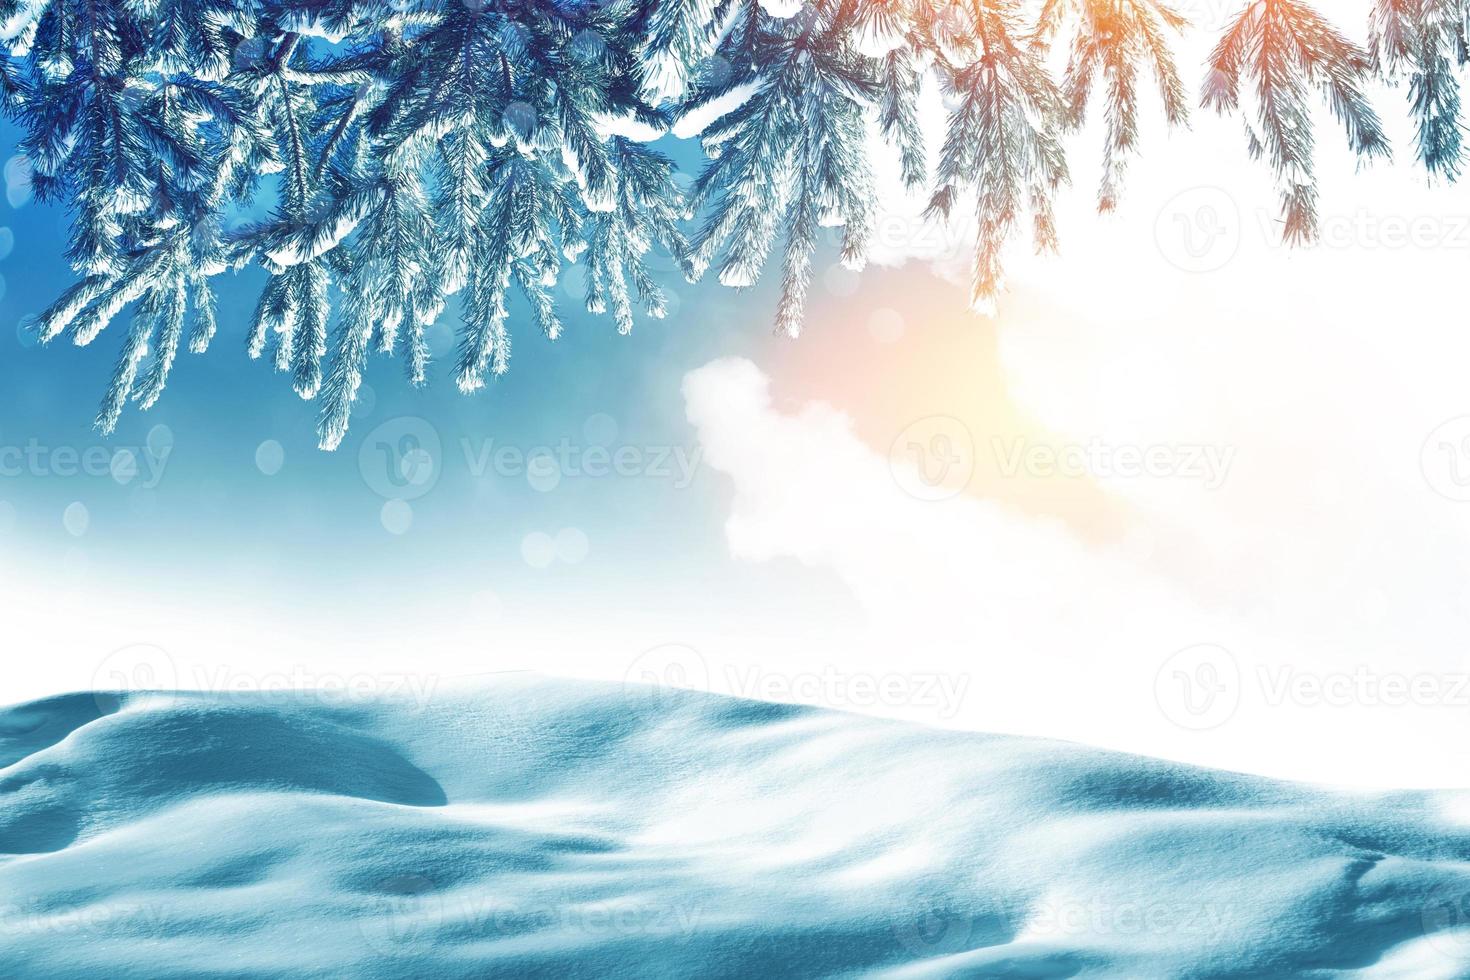 rama de abeto cubierta de nieve sobre un fondo de invierno. foto